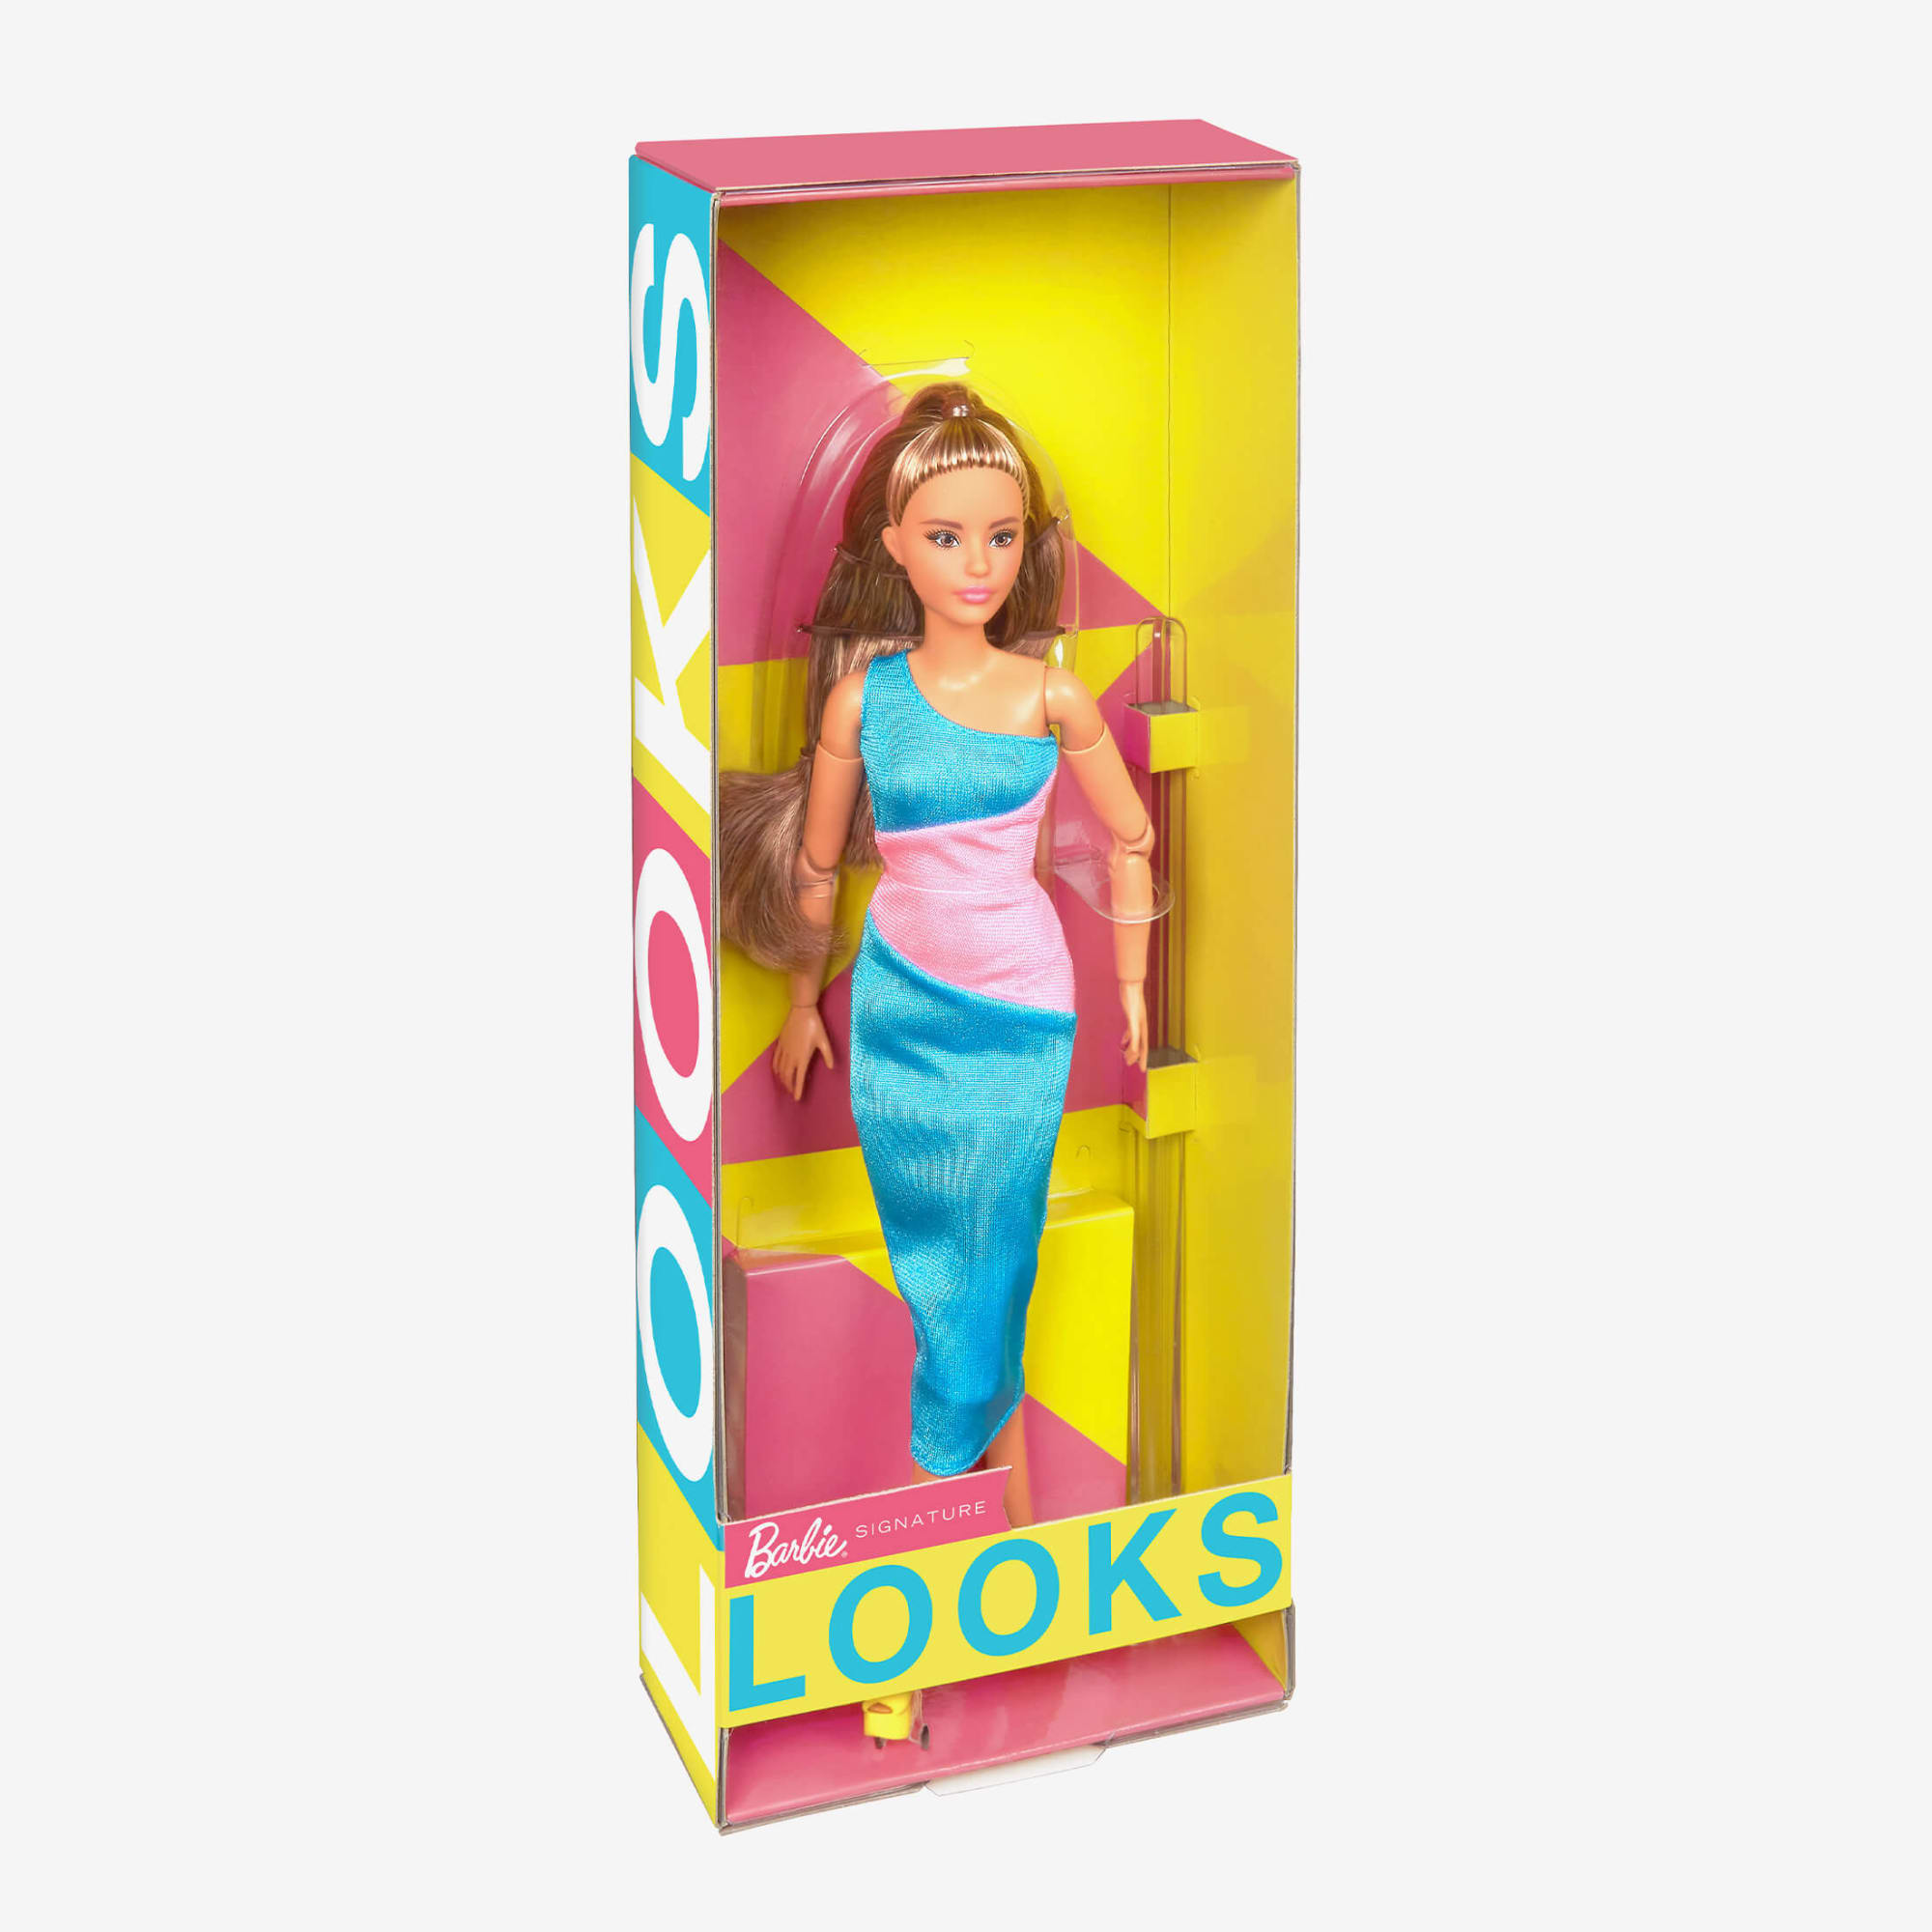 Barbie - Looks Signature Brunette 13 Doll